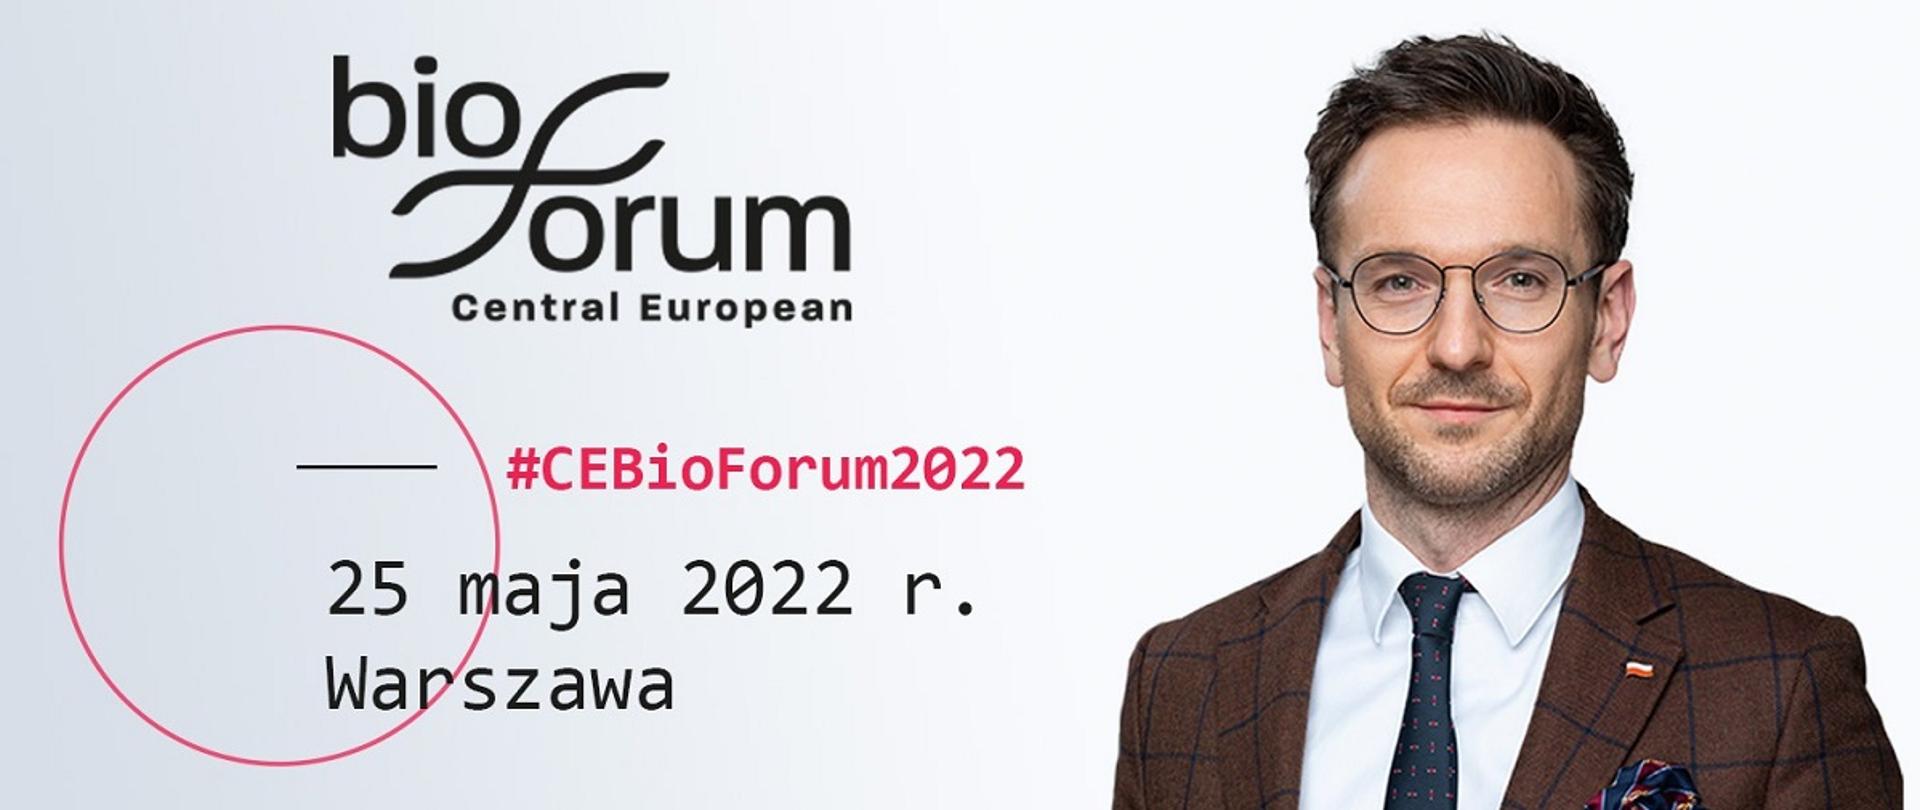 Minister rozwoju i technologii Waldemar Buda na CEBioForum, po prawej zdjęcie przedstawiające Waldemara Budę, po lewej logo forum 